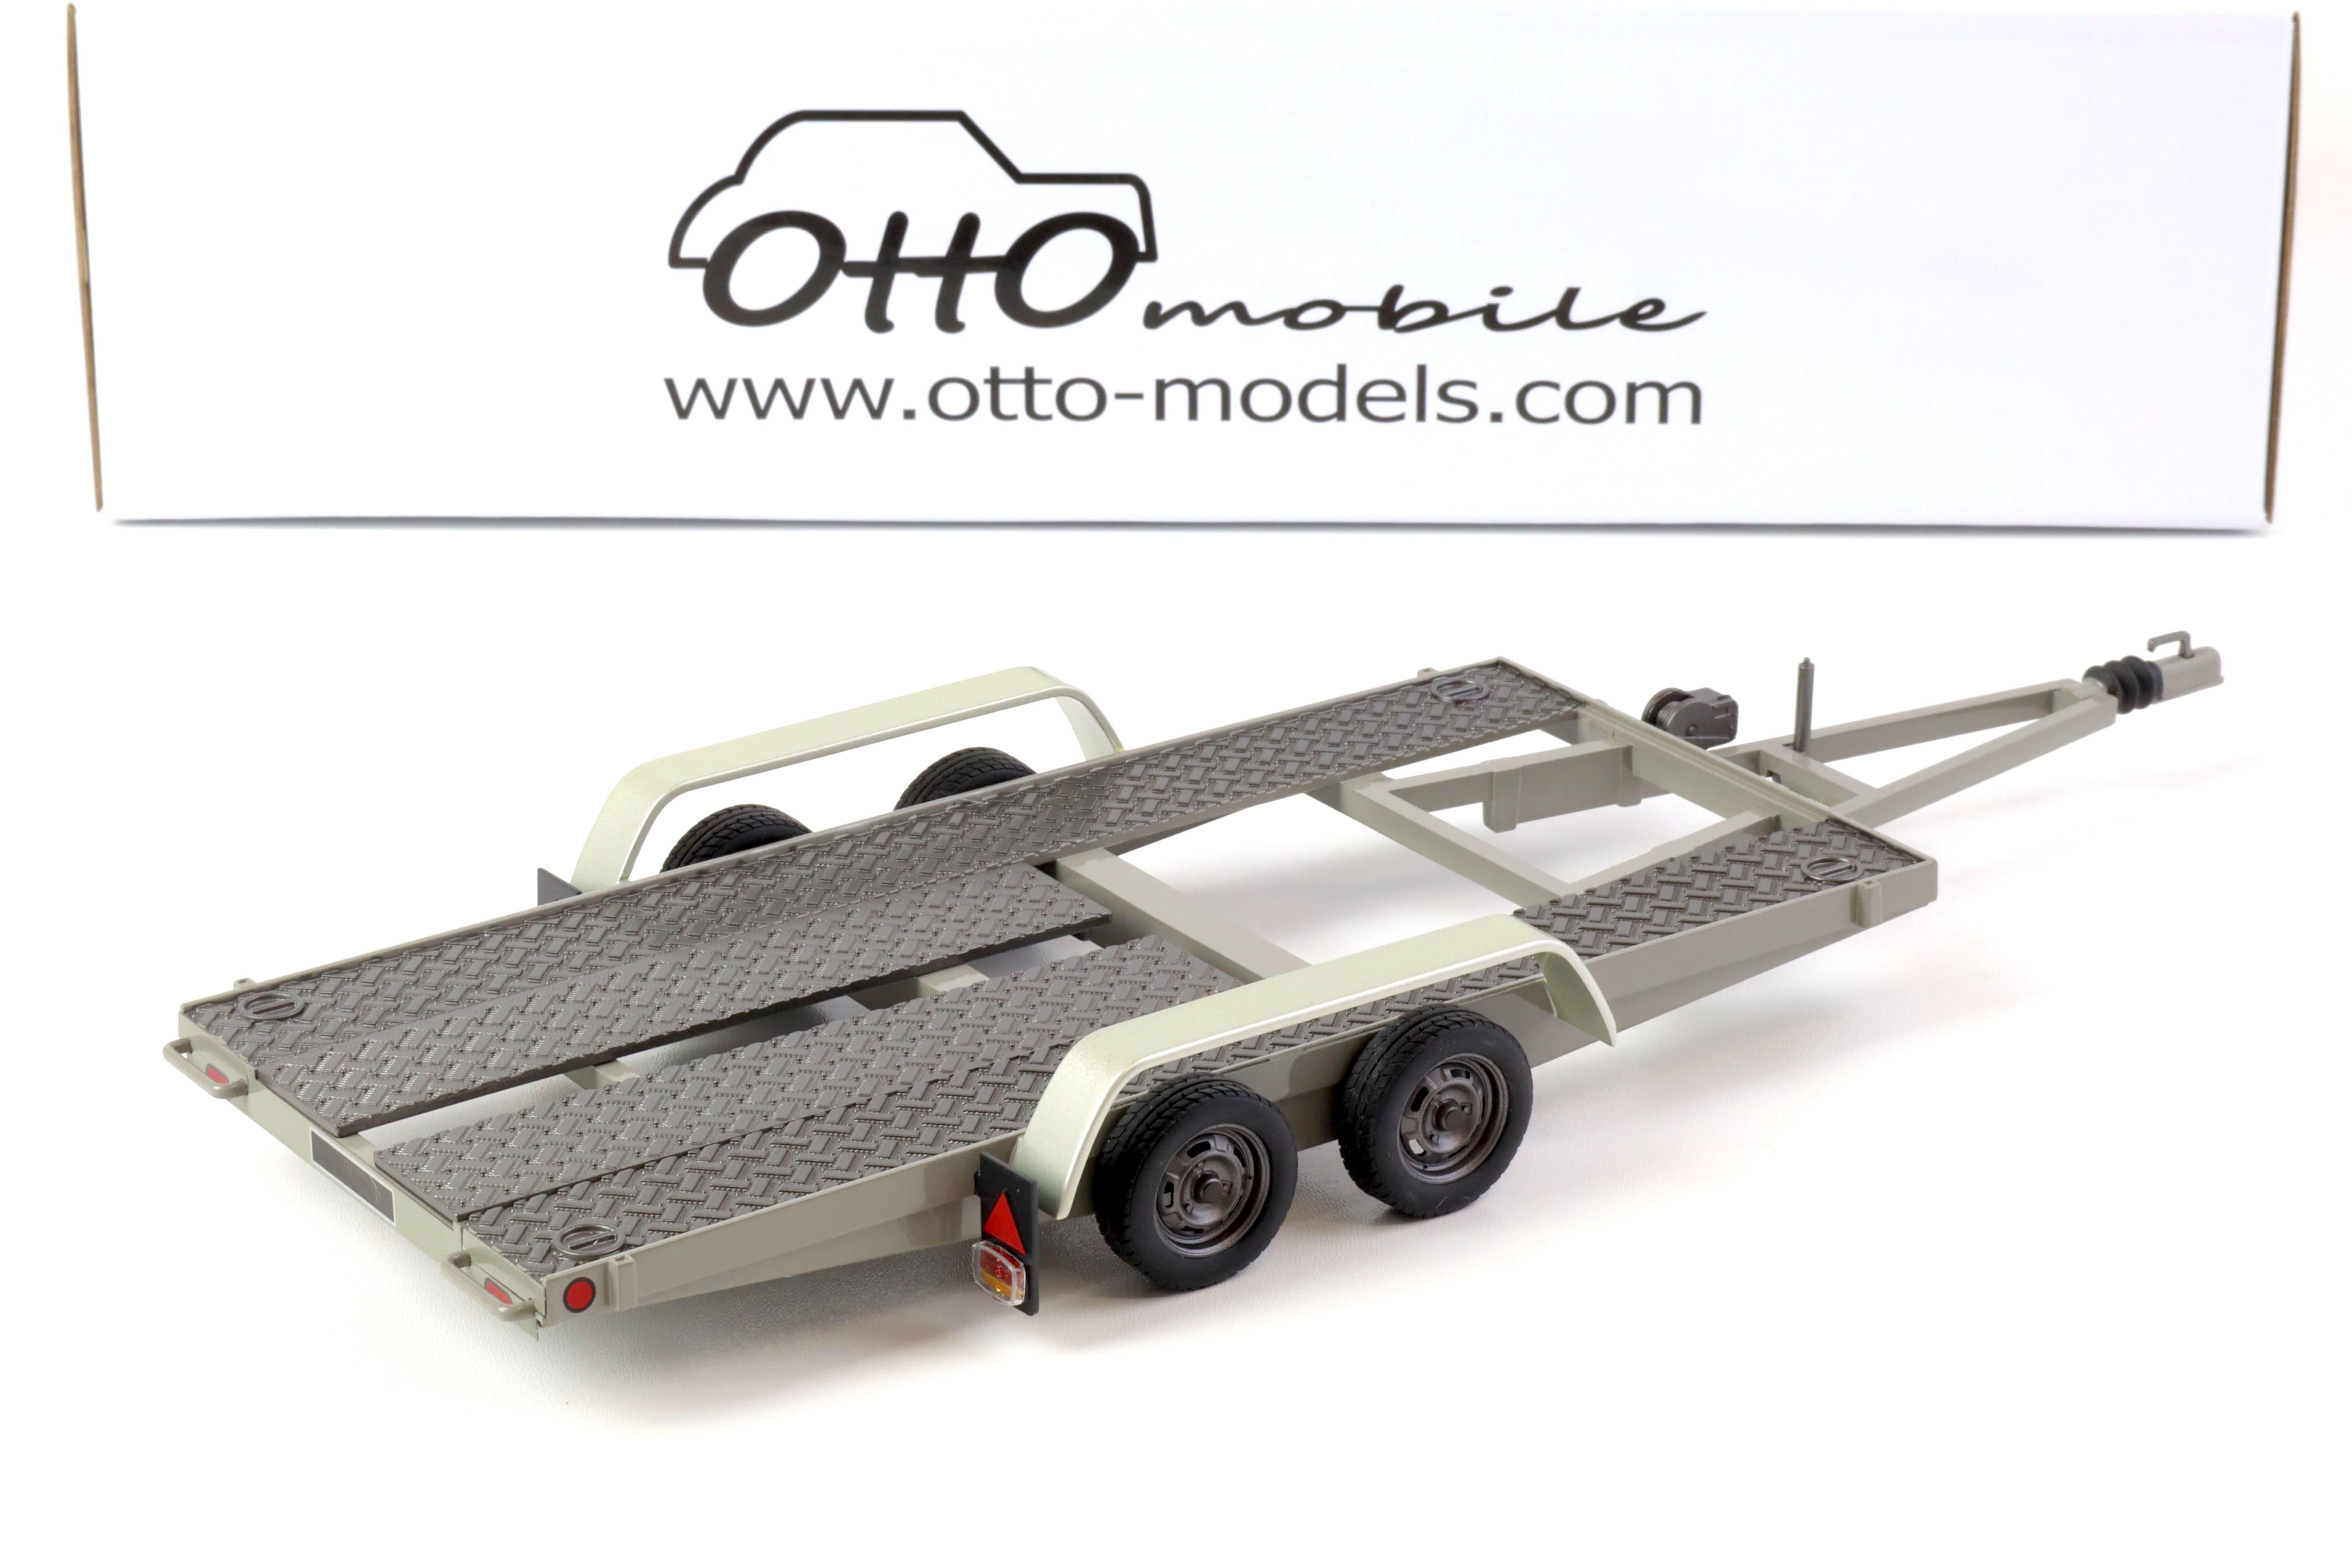 1:18 OTTO mobile OT225D Autoanhänger Anhänger Car Trailer Carrier grey 